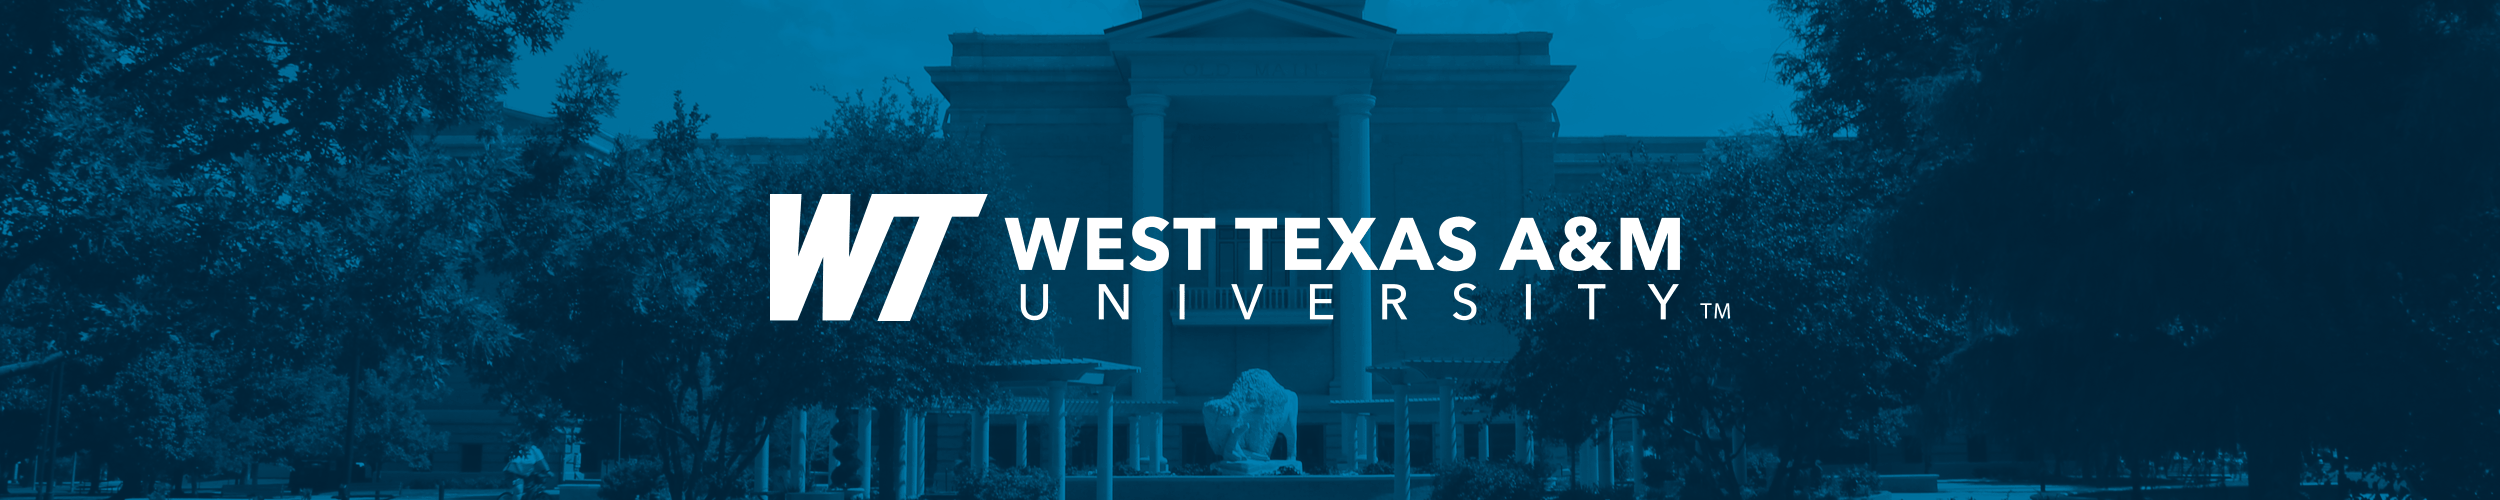 West Texas A&M University logo